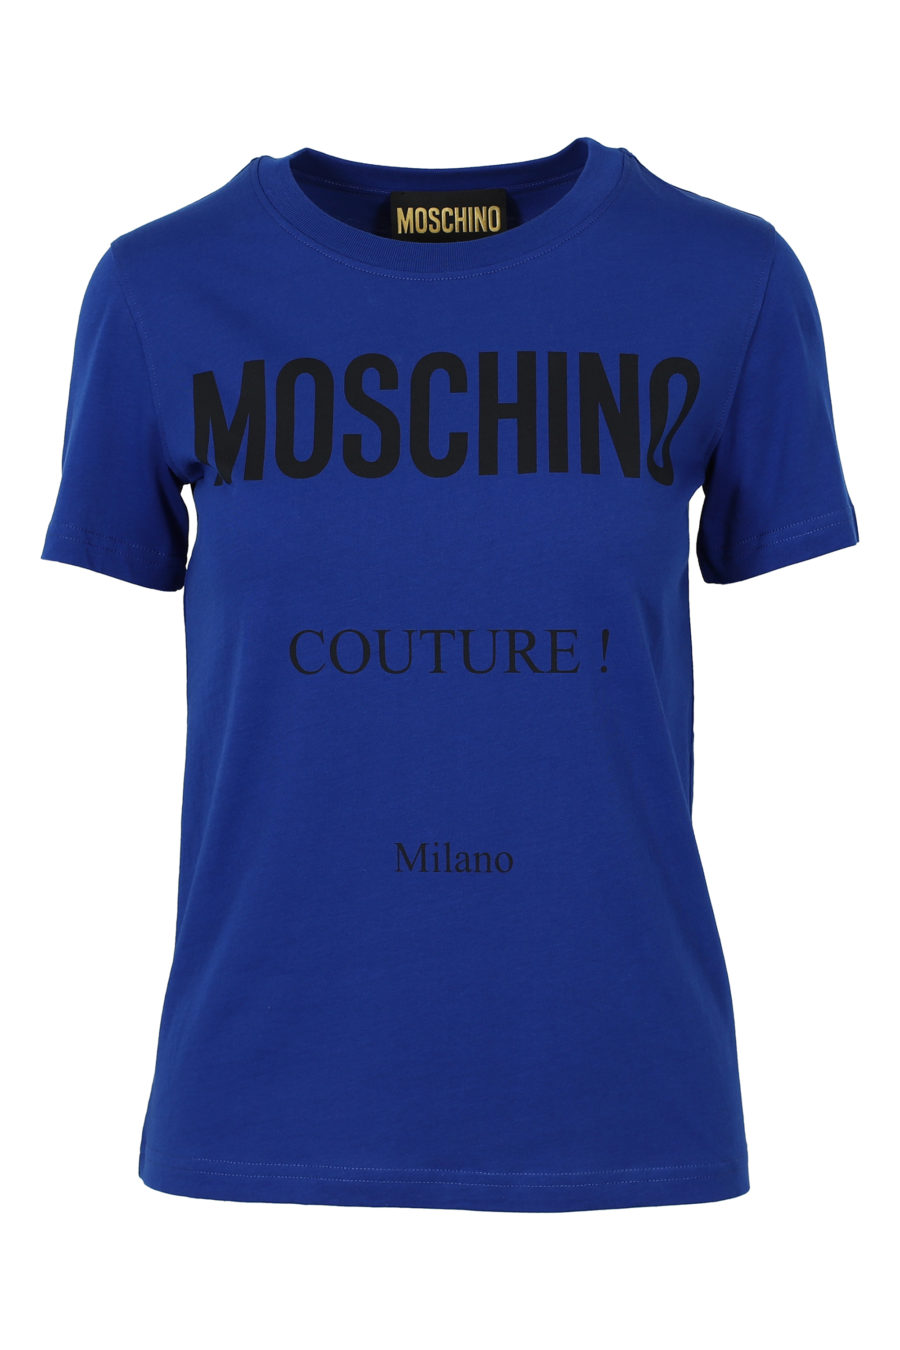 Camiseta azul de manga corta "Couture" - IMG 3141